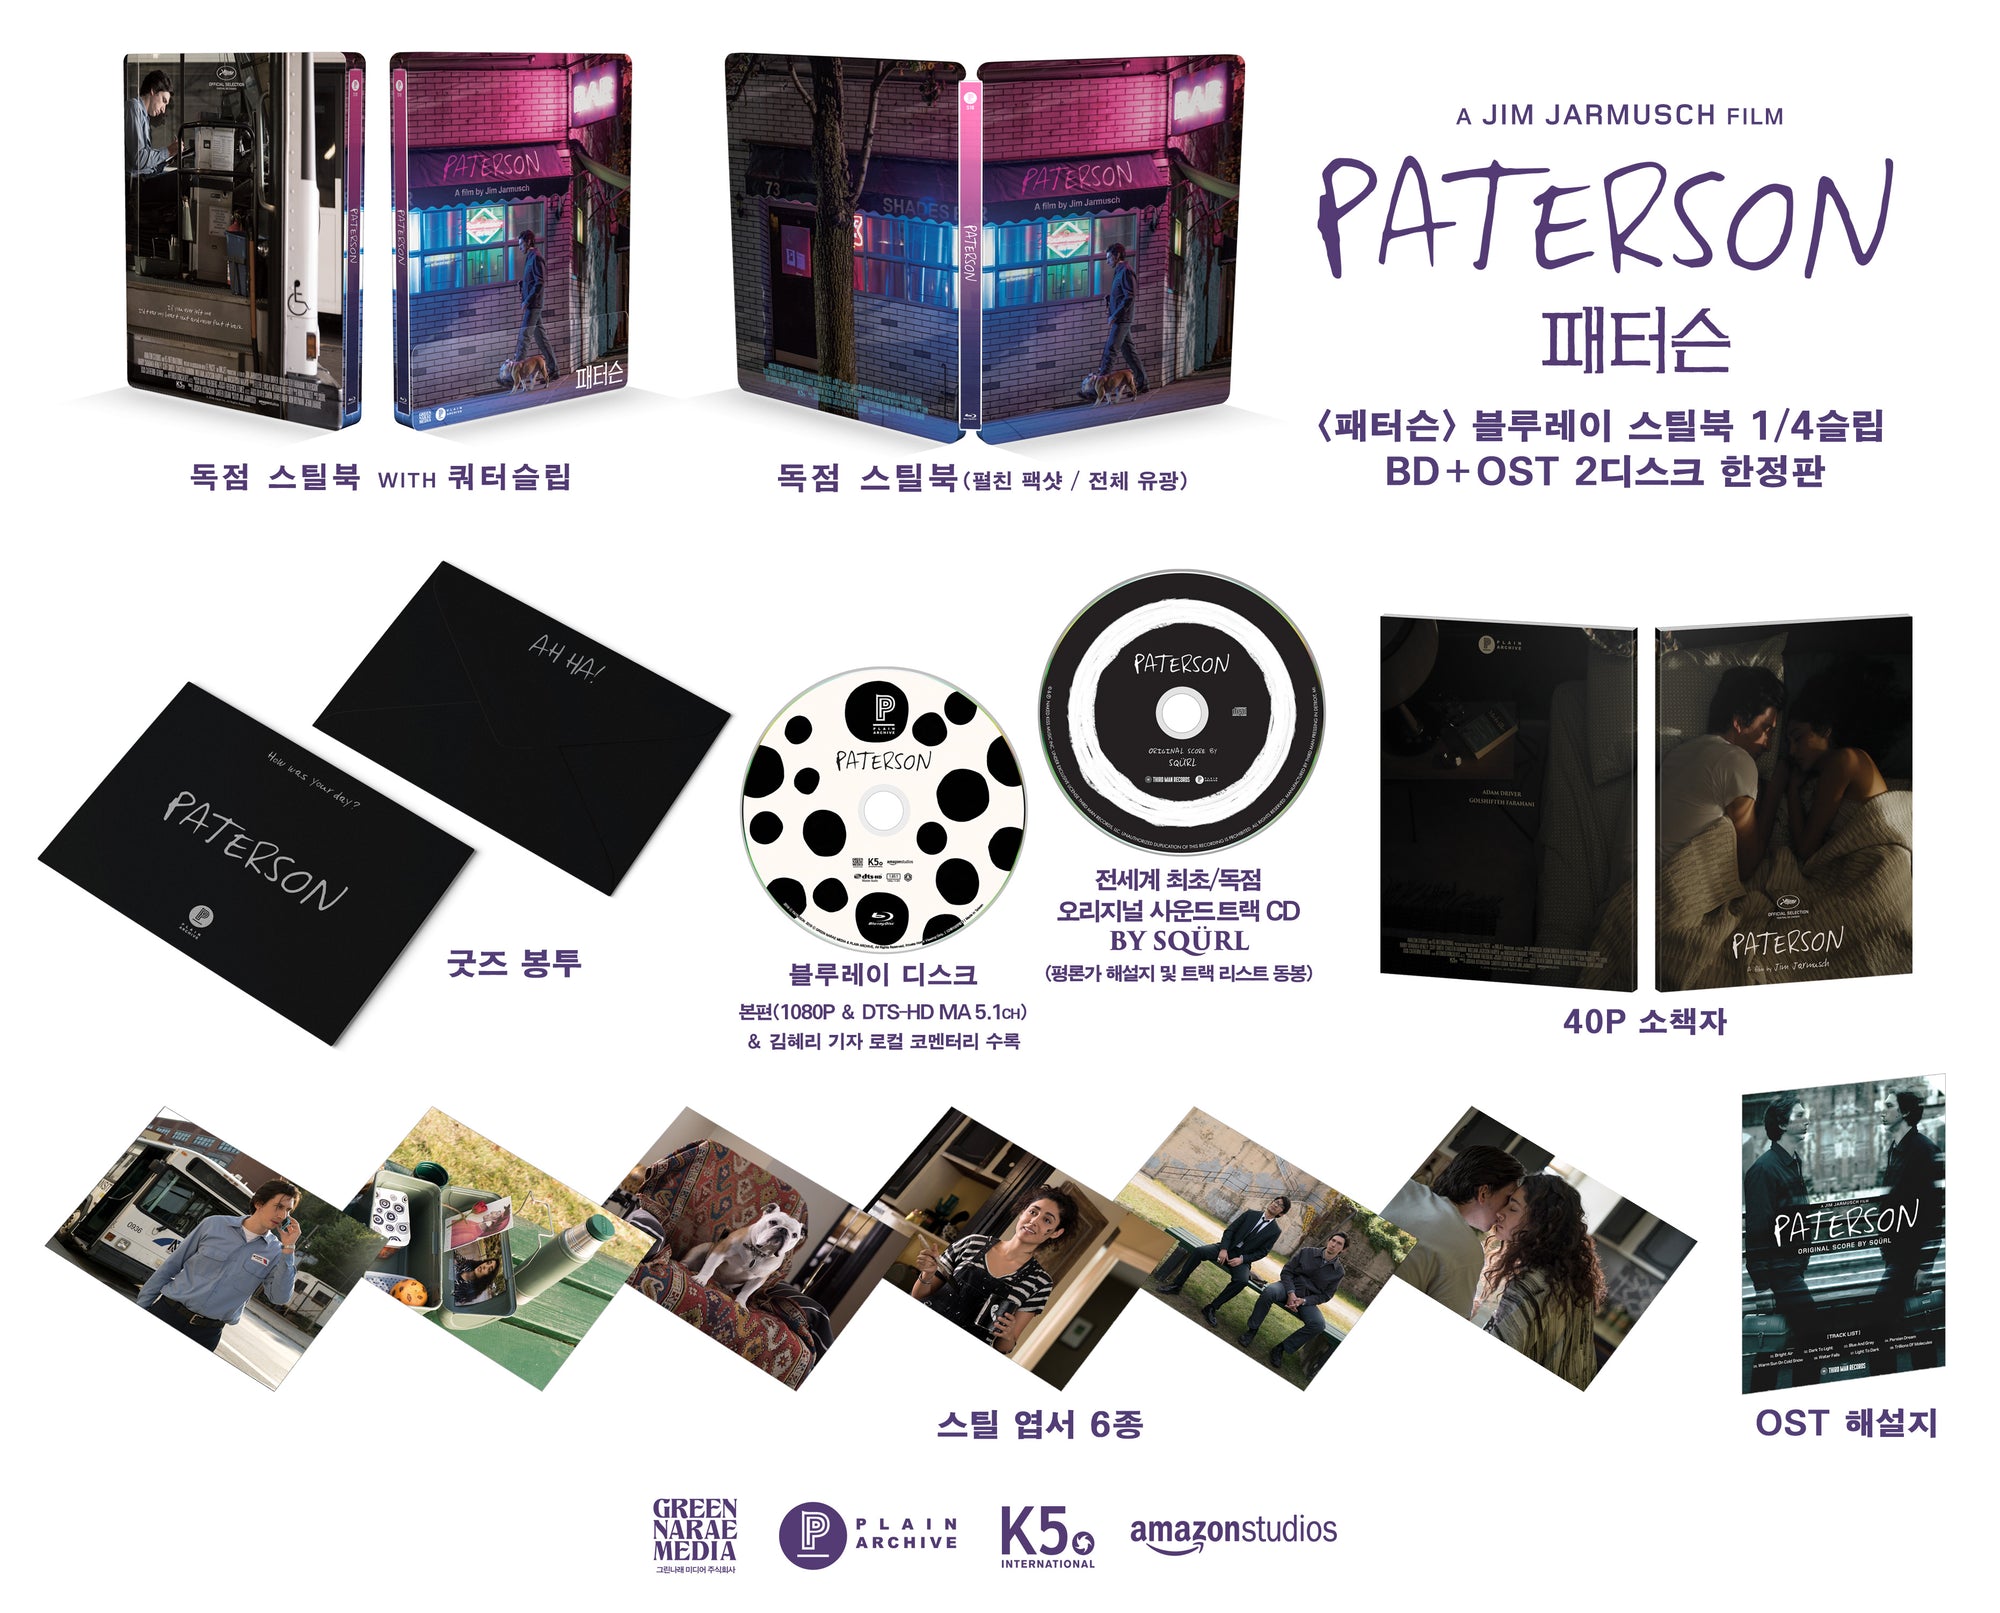 PATERSON Steelbook: Blu-ray + Soundtrack (1/4 Slip)